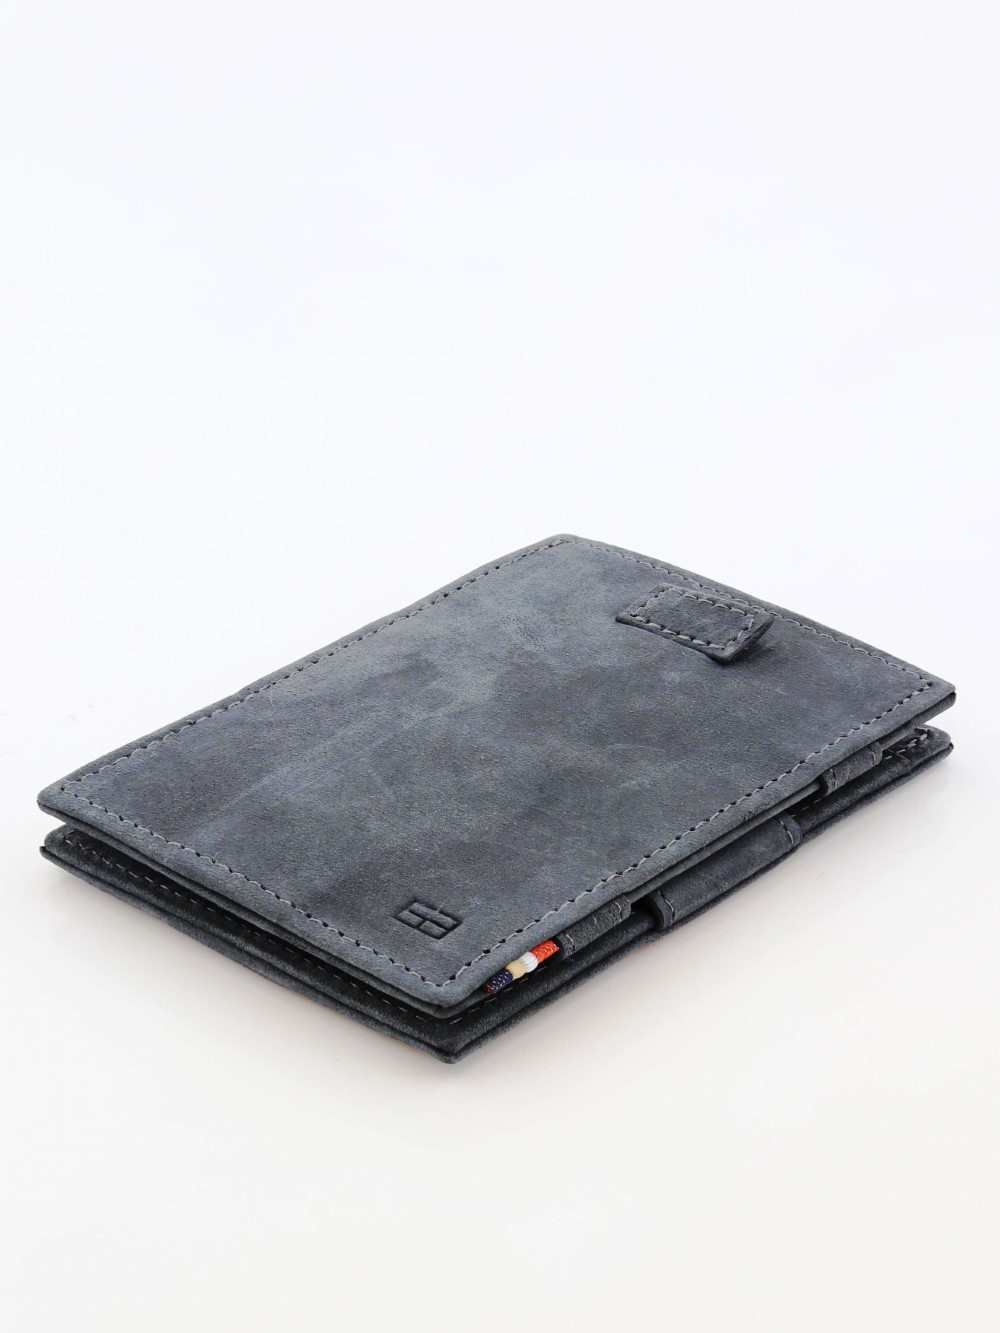 محفظة غارزيني كافاري ماجيك الكلاسيكية باللون الأسود الفاحم.